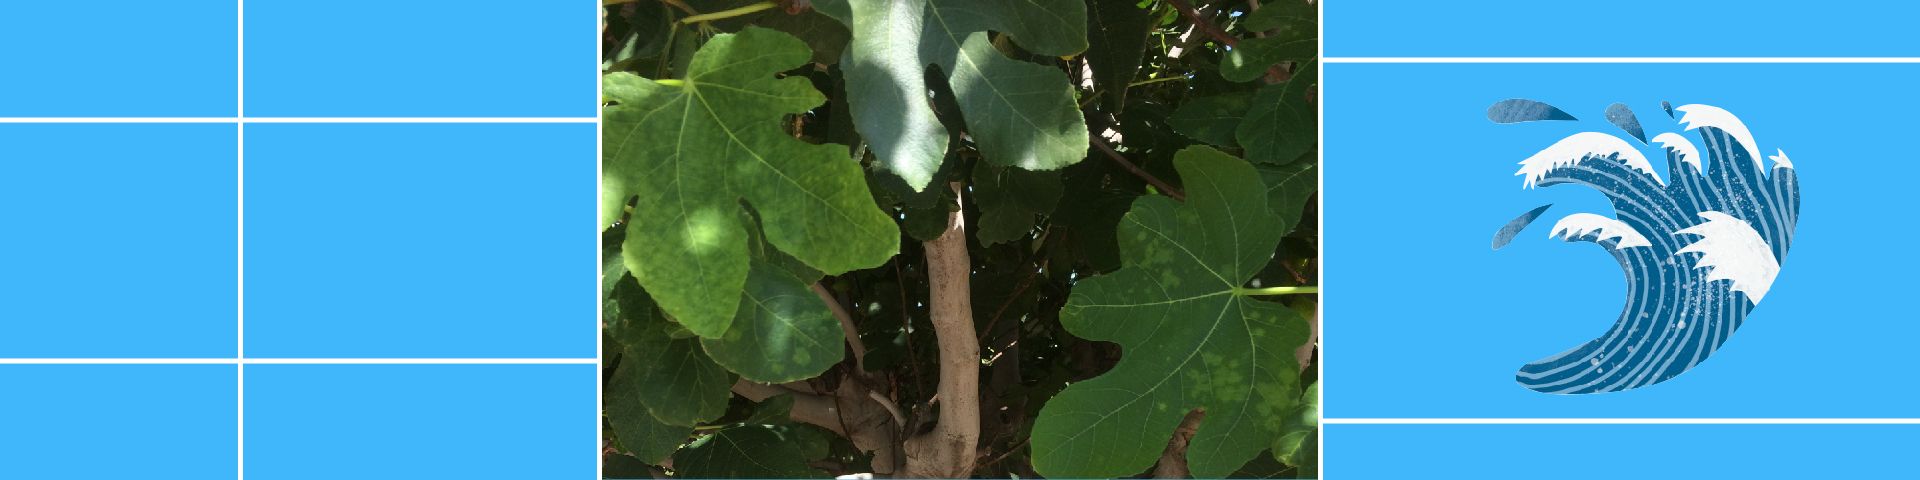 Αύγουστος 2021: Συκιά, Ficus carica ‘Kalamata’ - Εικόνα